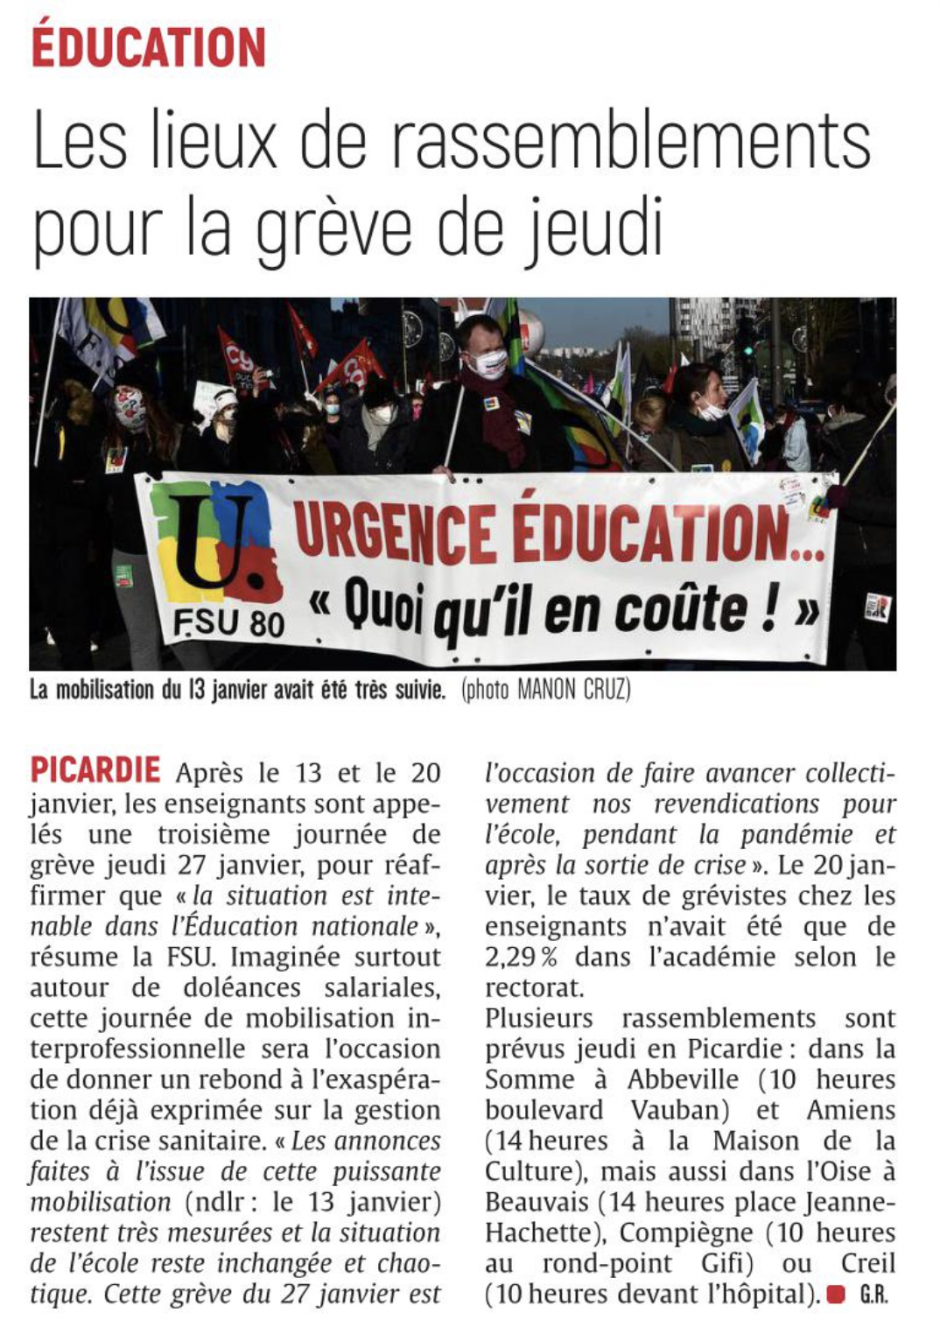 20220125-CP-Picardie-Les lieux de rassemblement pour la grève de jeudi